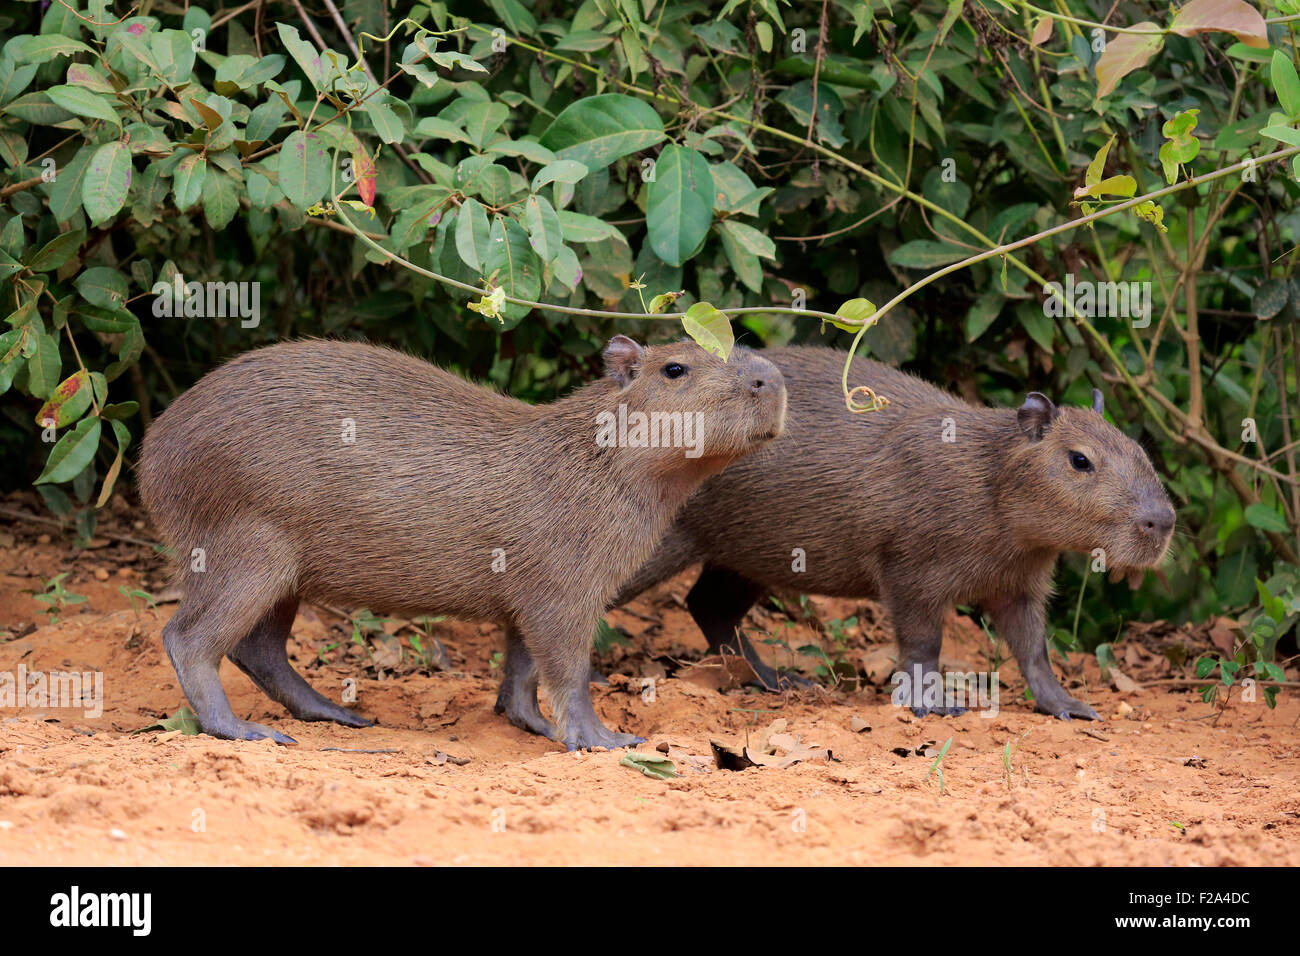 Capybara (Hydrochoerus hydrochaeris), les jeunes animaux, sur terre, Pantanal, Mato Grosso, Brésil Banque D'Images